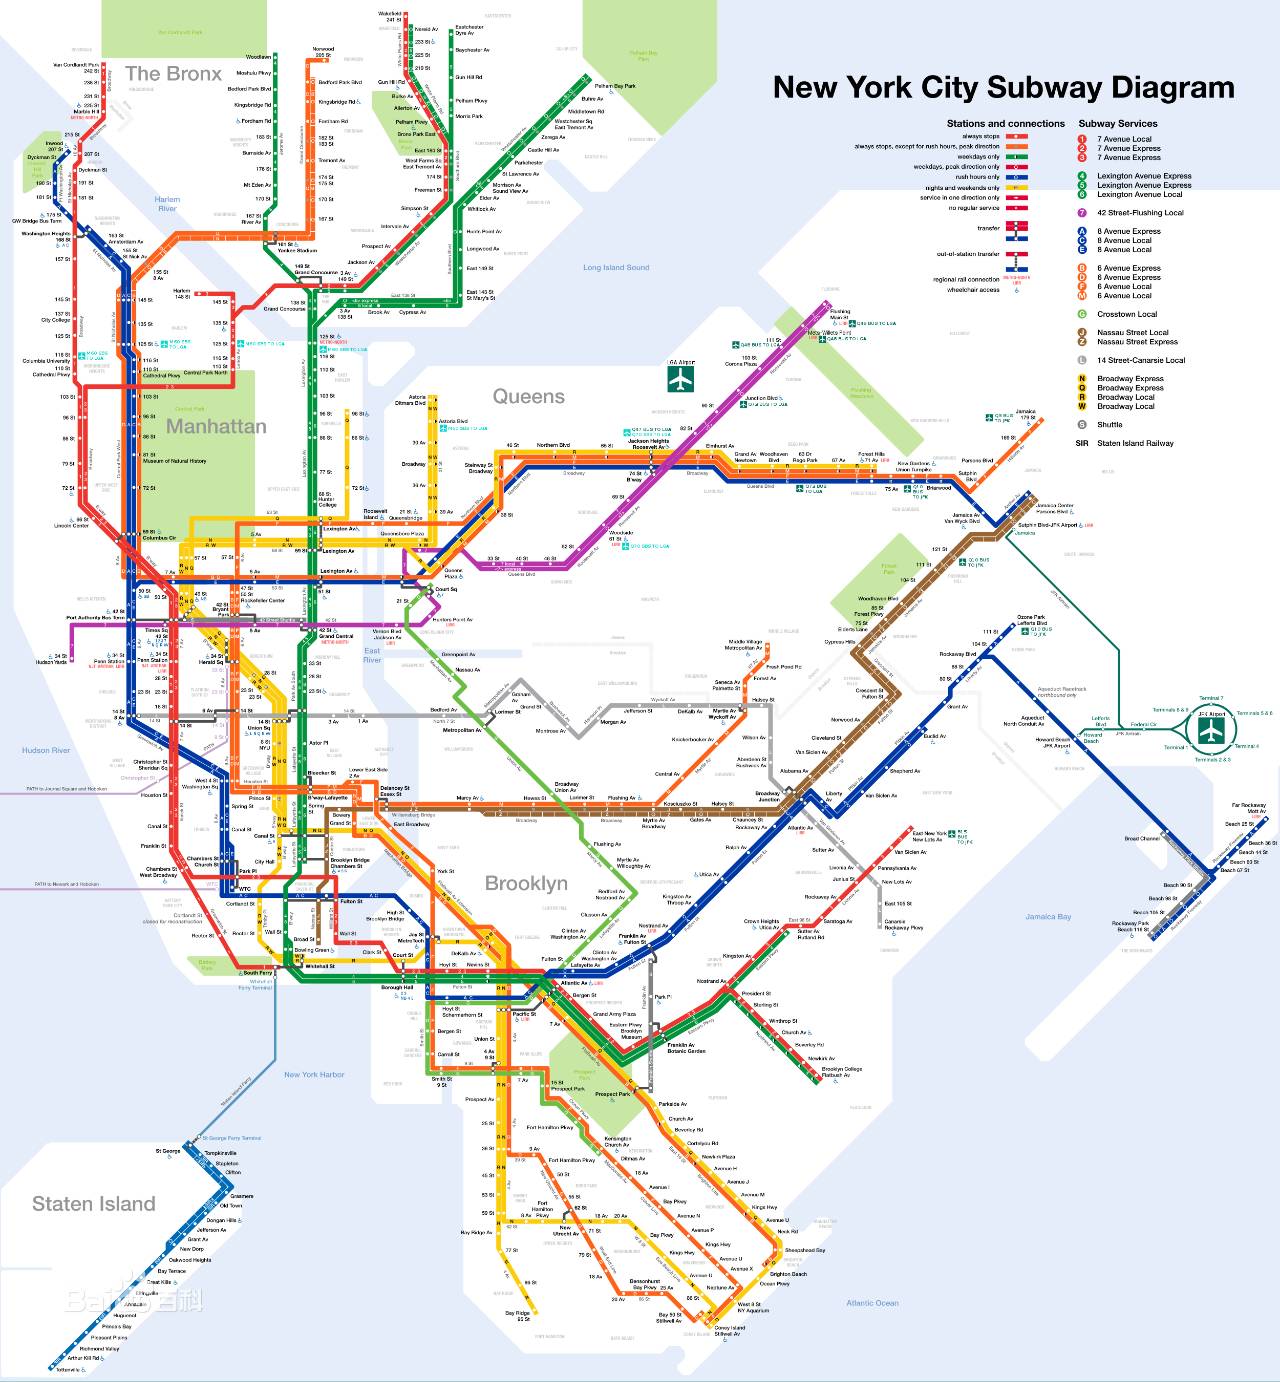 纽约地铁:轨道长度约1355公里